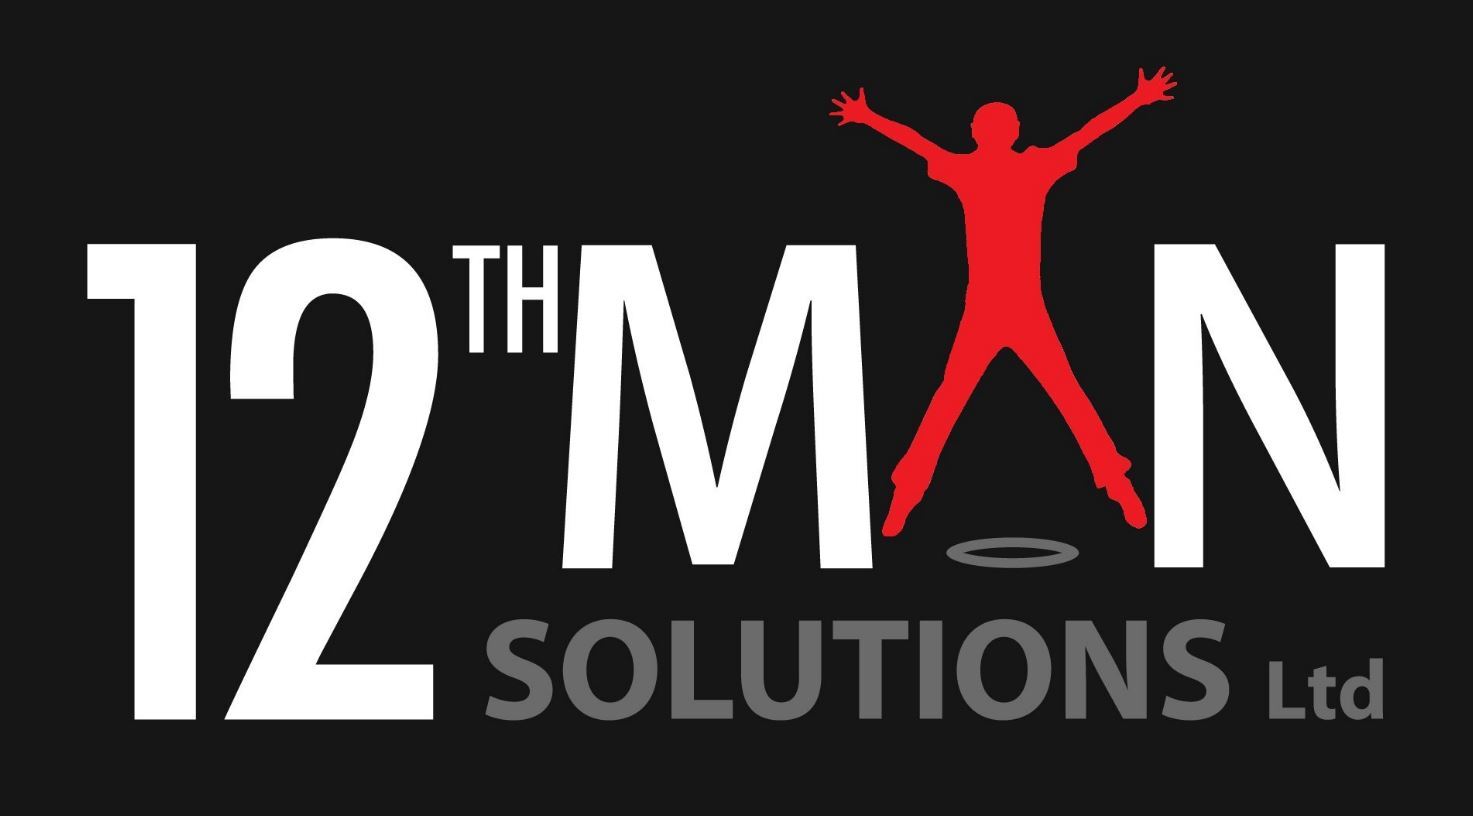 12th Man Solutions Ltd